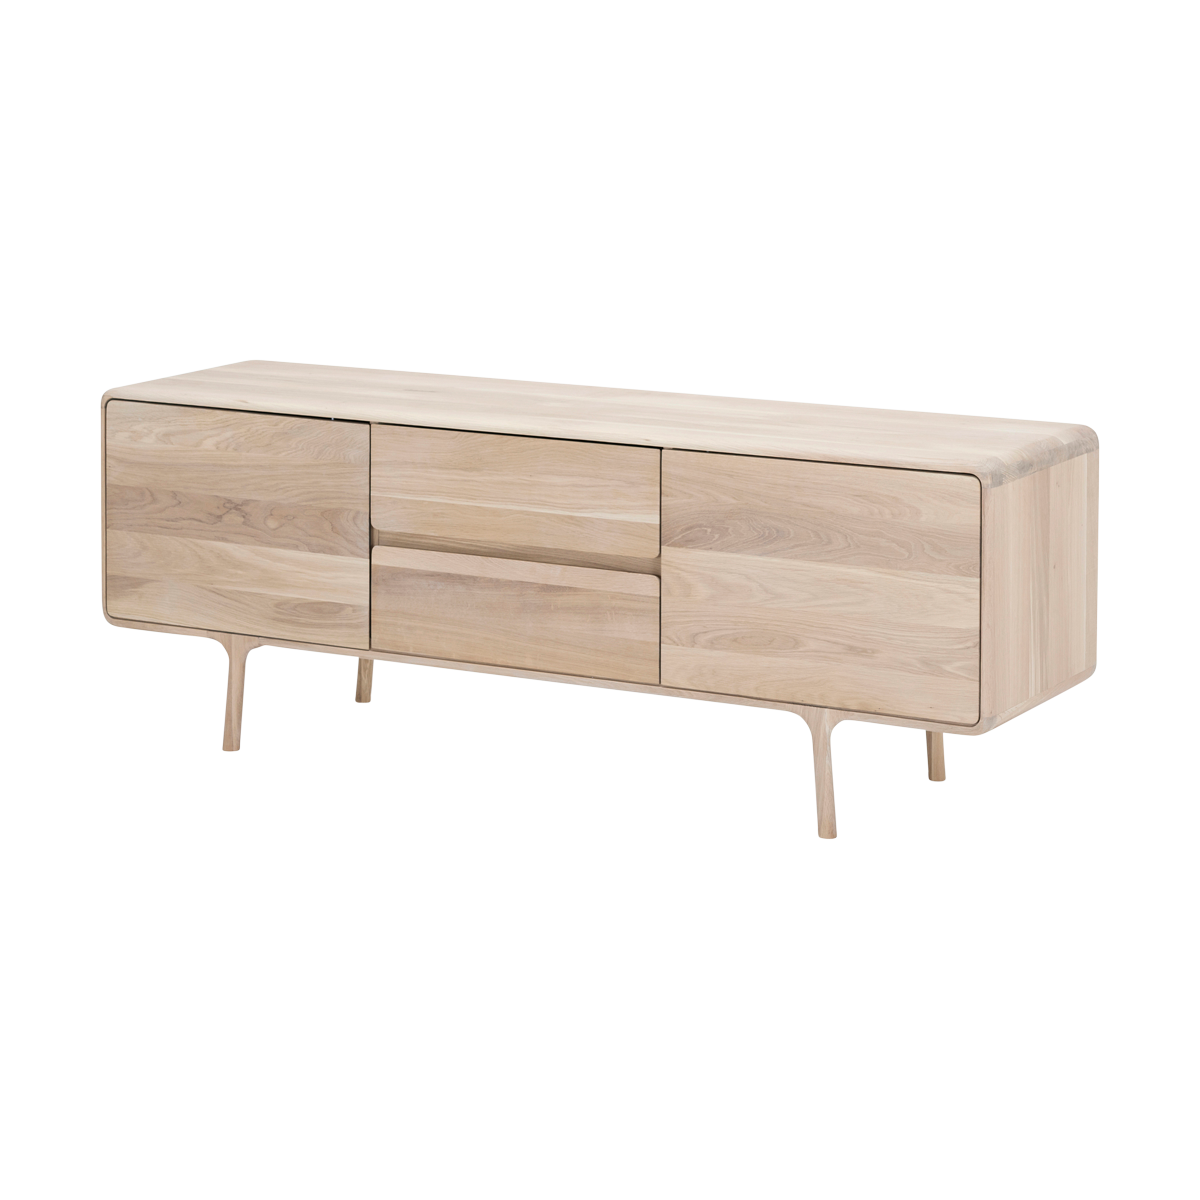 Fawn sideboard houten dressoir whitewash - 180 x 45 cm